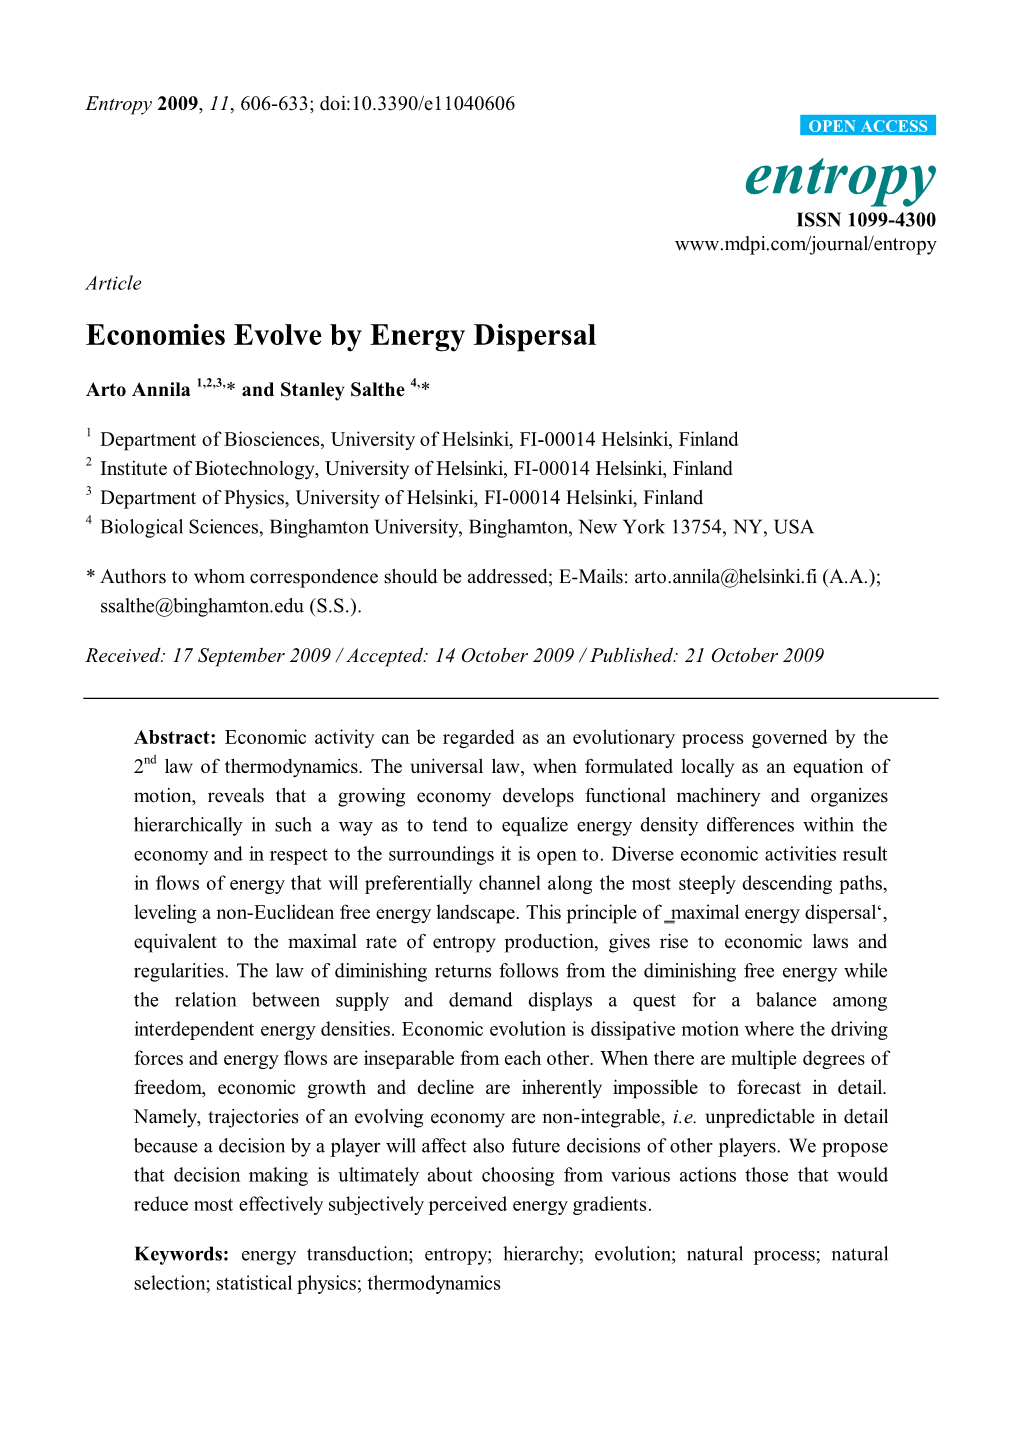 Economies Evolve by Energy Dispersal